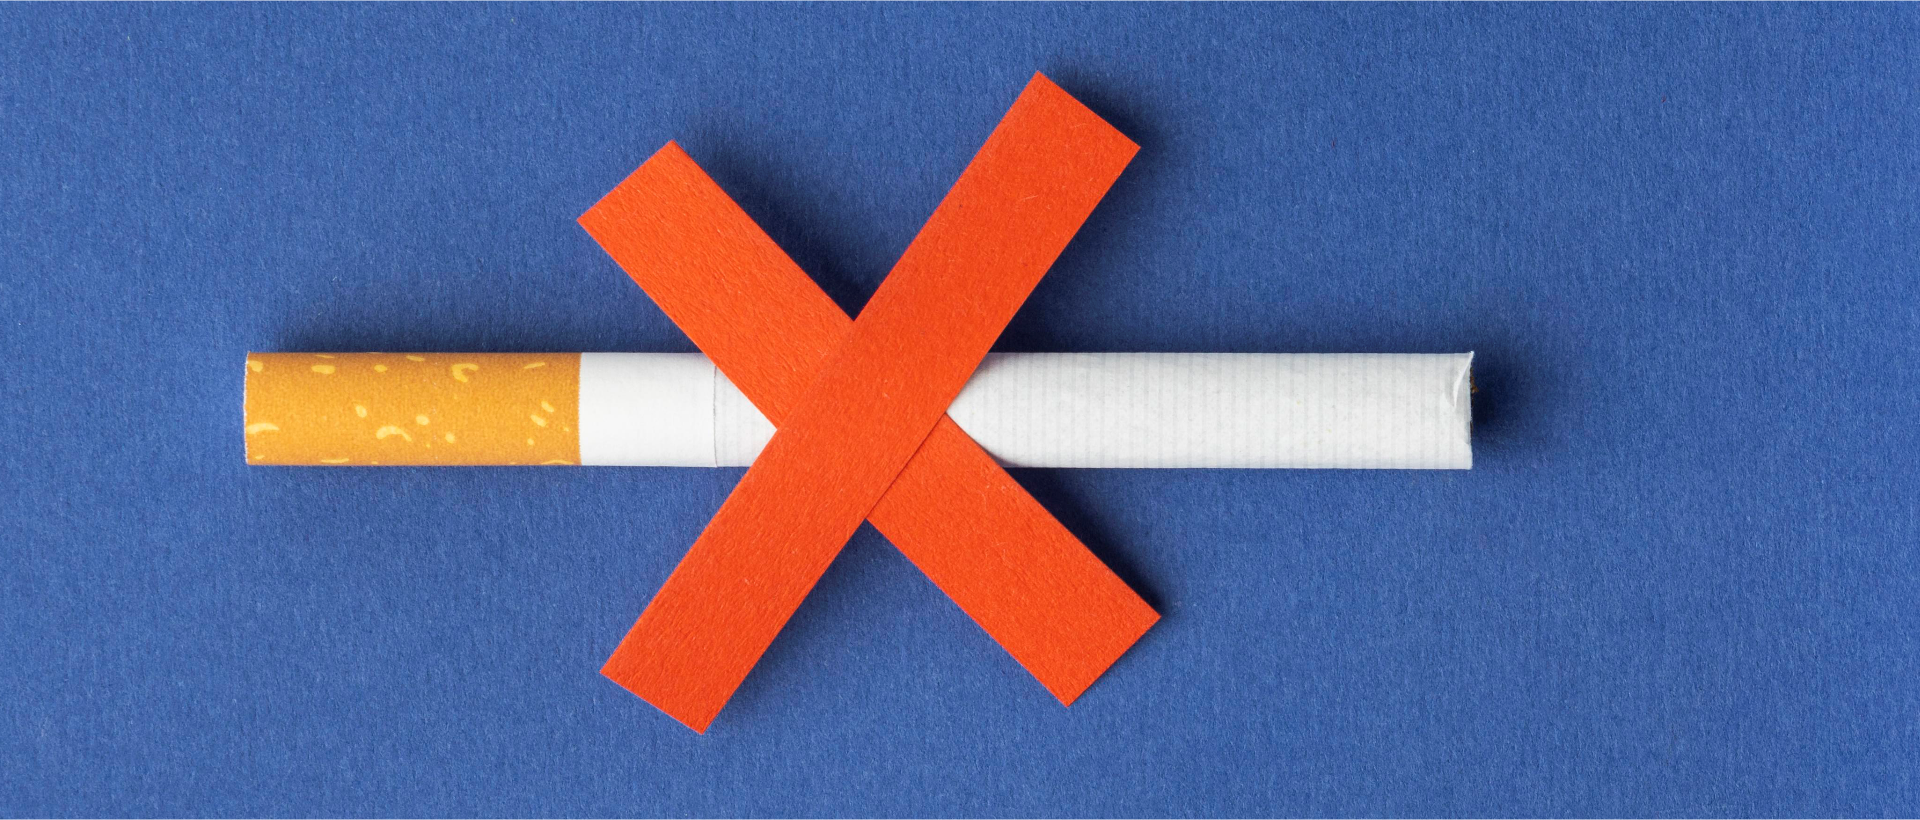 31 de Maio - Dia Mundial sem Tabaco